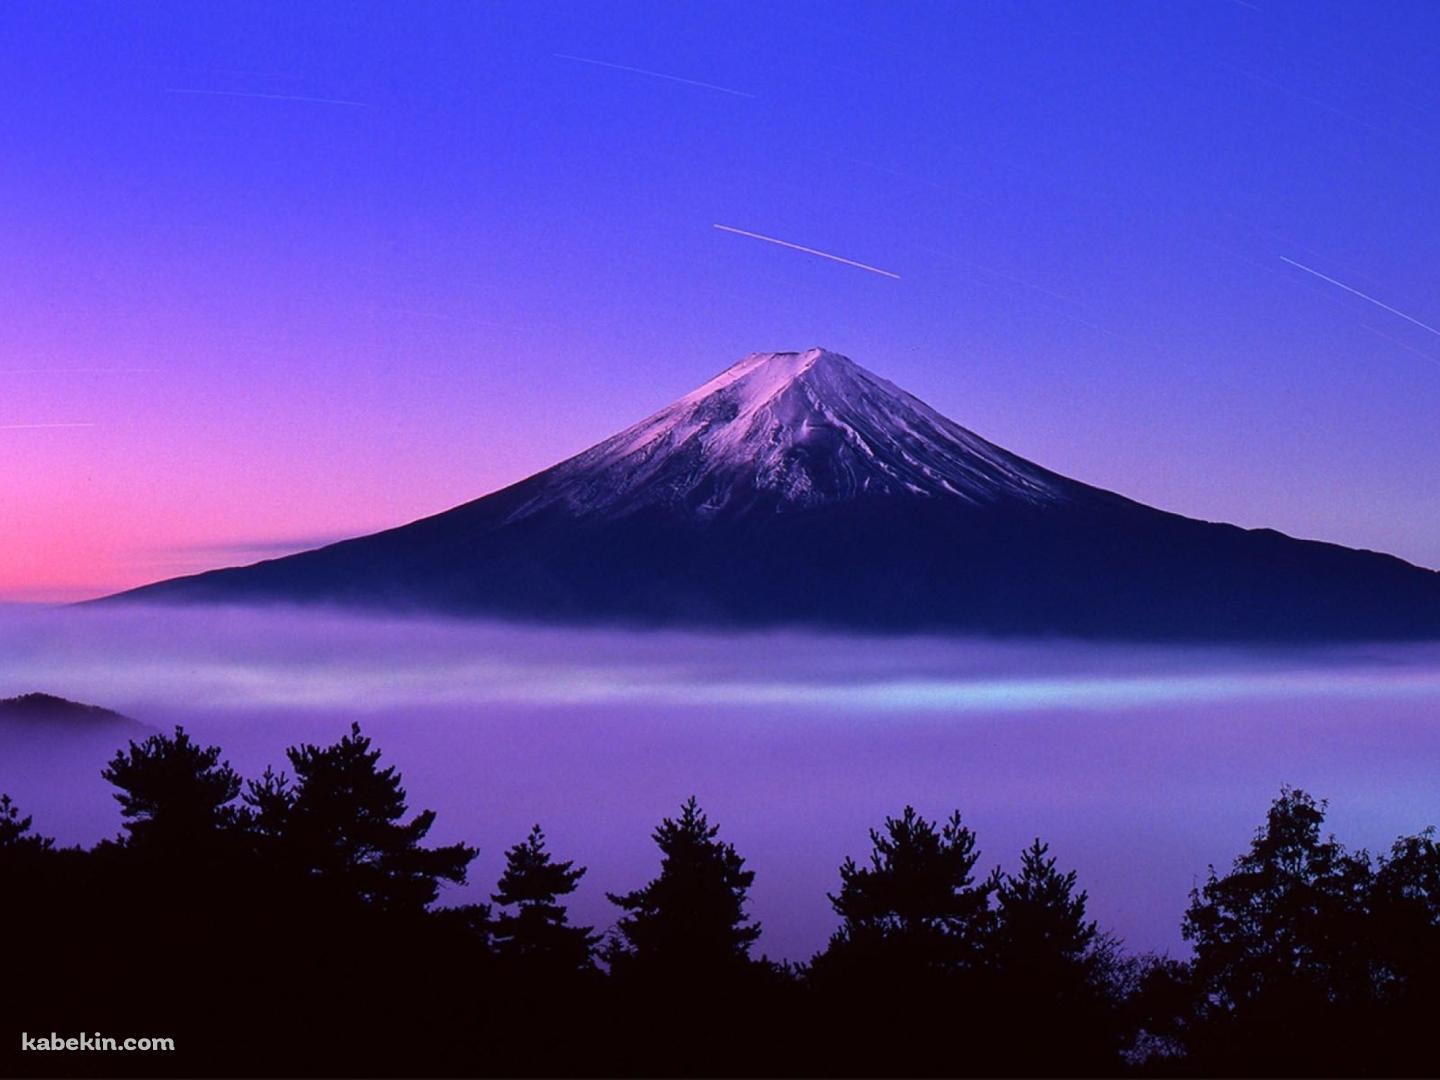 富士山と流れ星の壁紙(1440px x 1080px) 高画質 PC・デスクトップ用